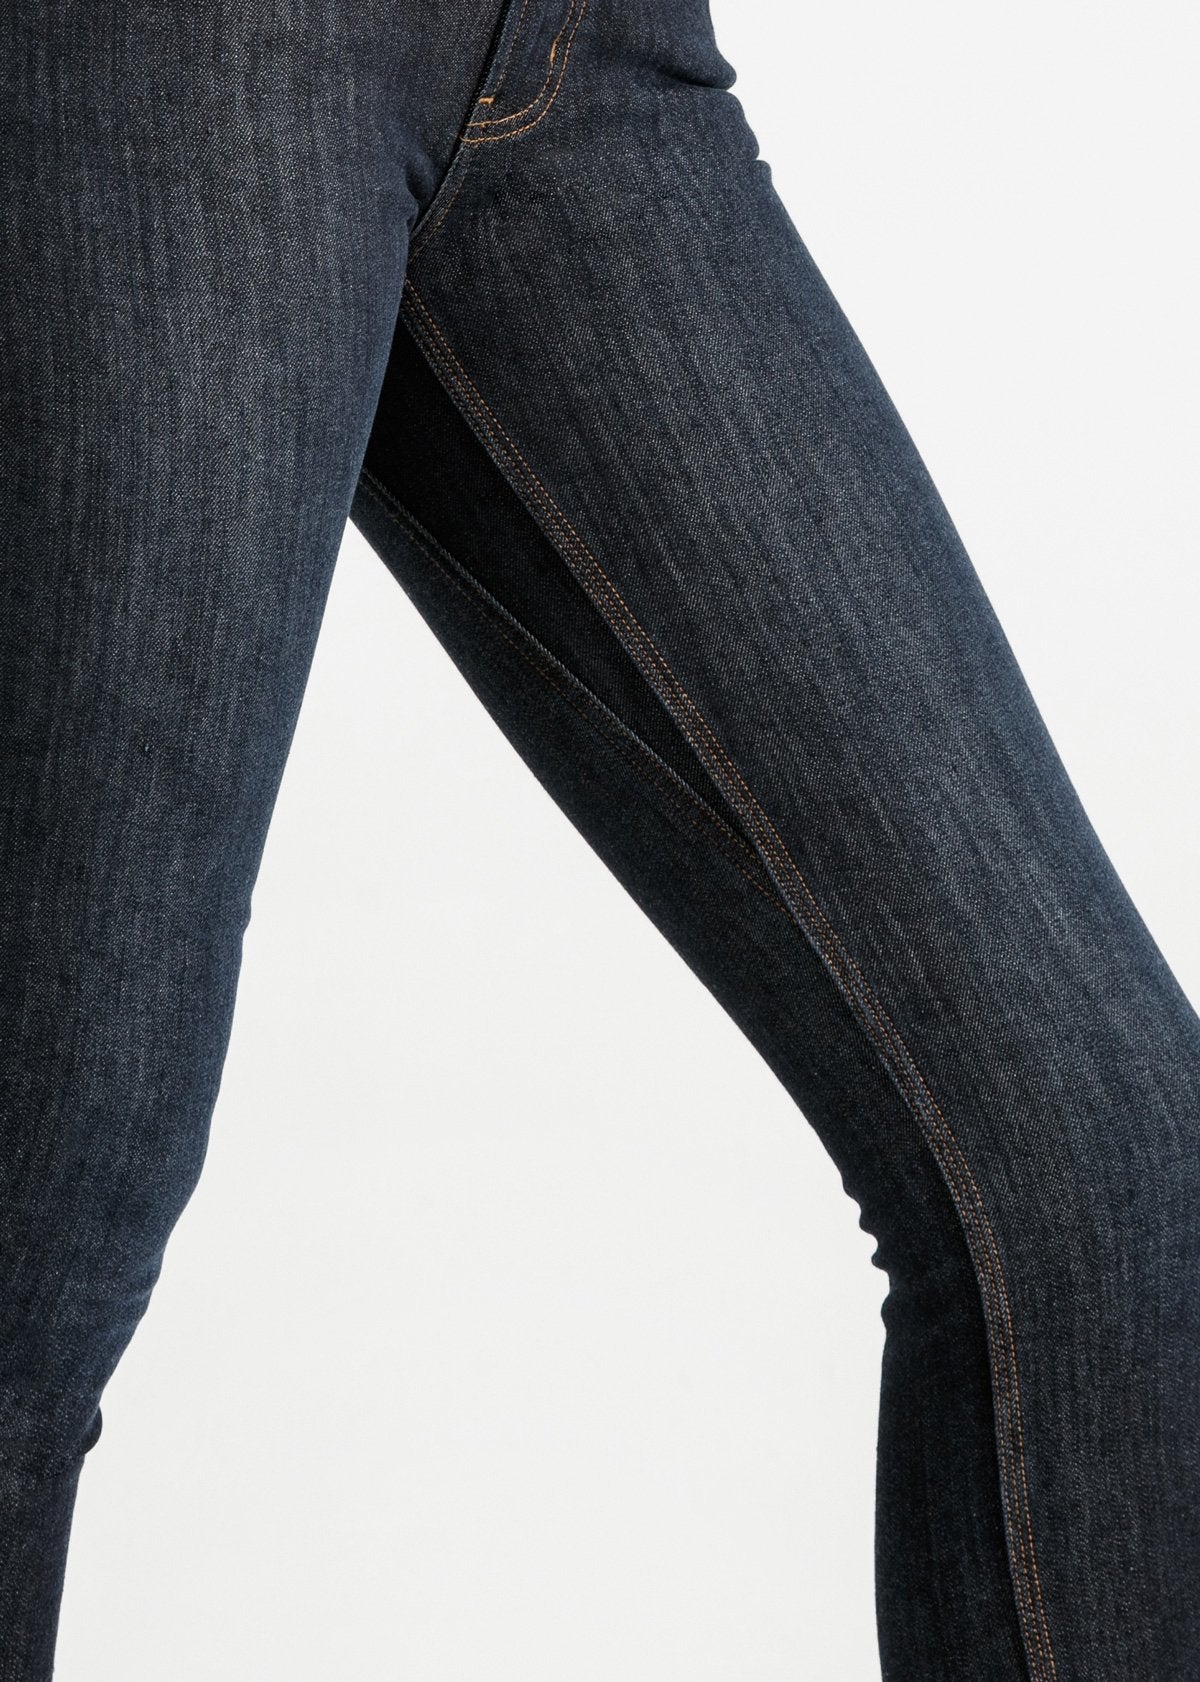 womens dark wash slim straight fit warm stretch jeans gusset detail